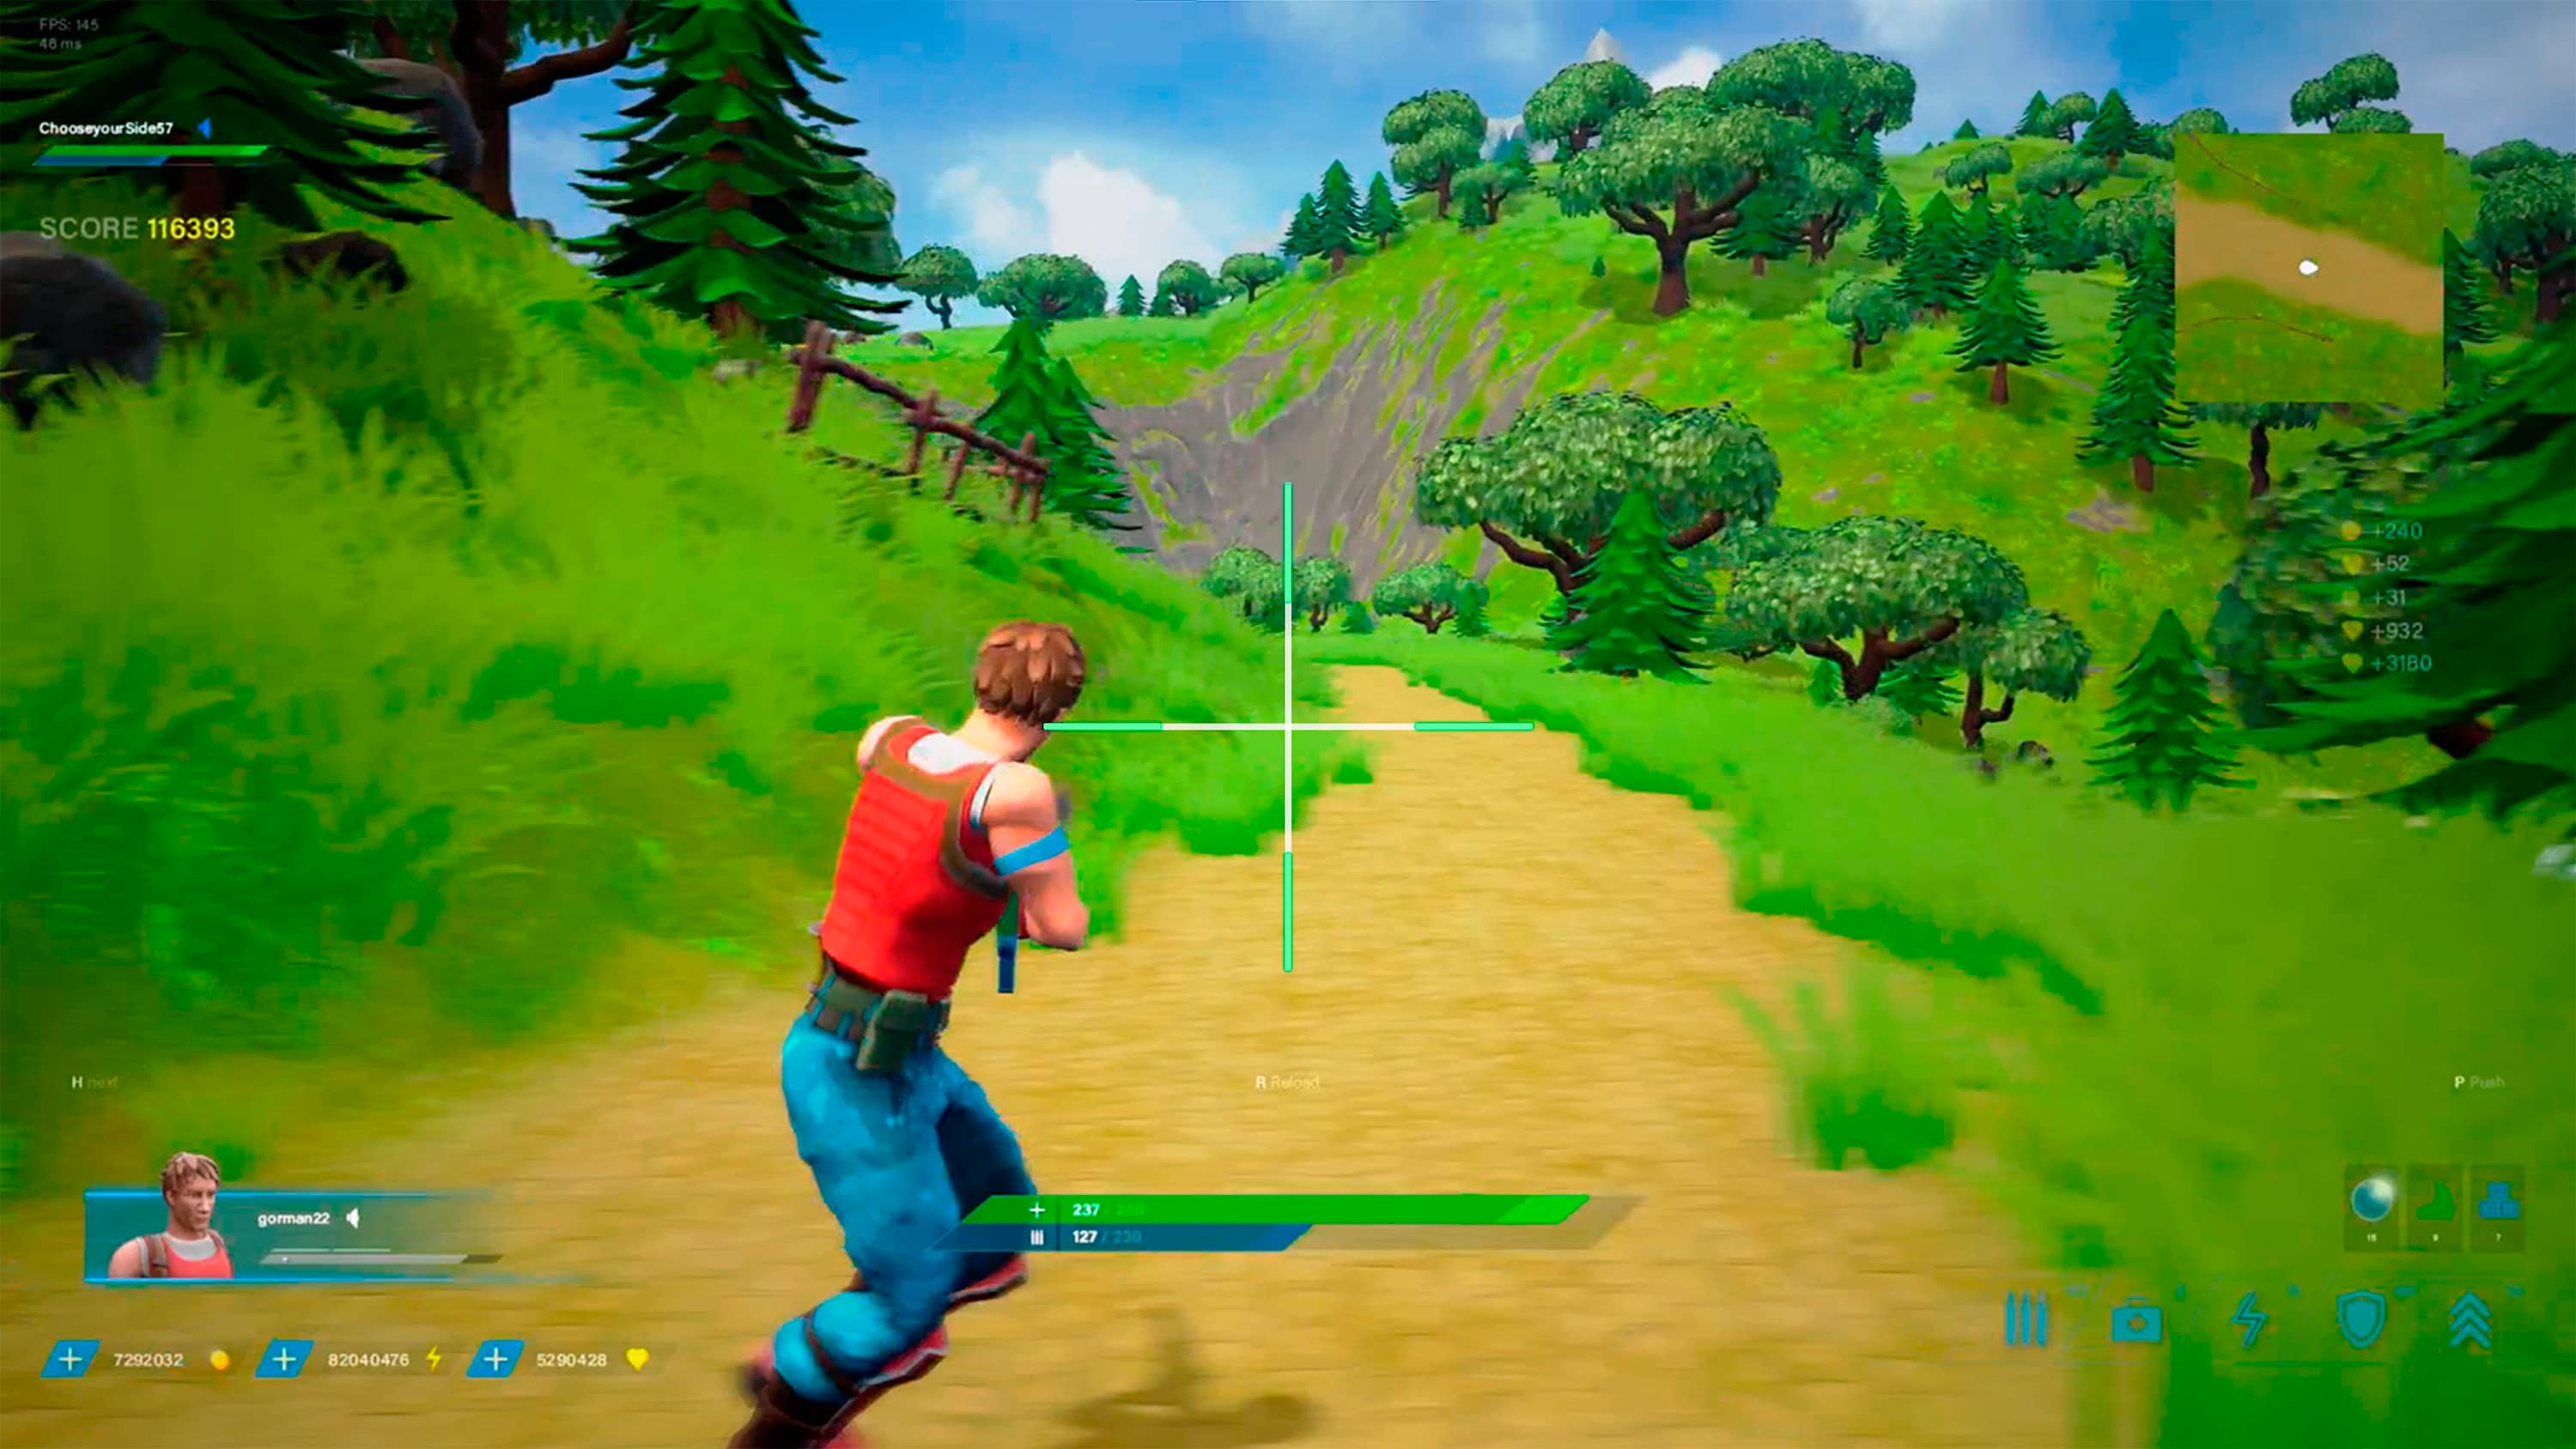 Bild aus einem Spiel, auf dem ein Mann im Wald mit einer Schusswaffe zu sehen ist.